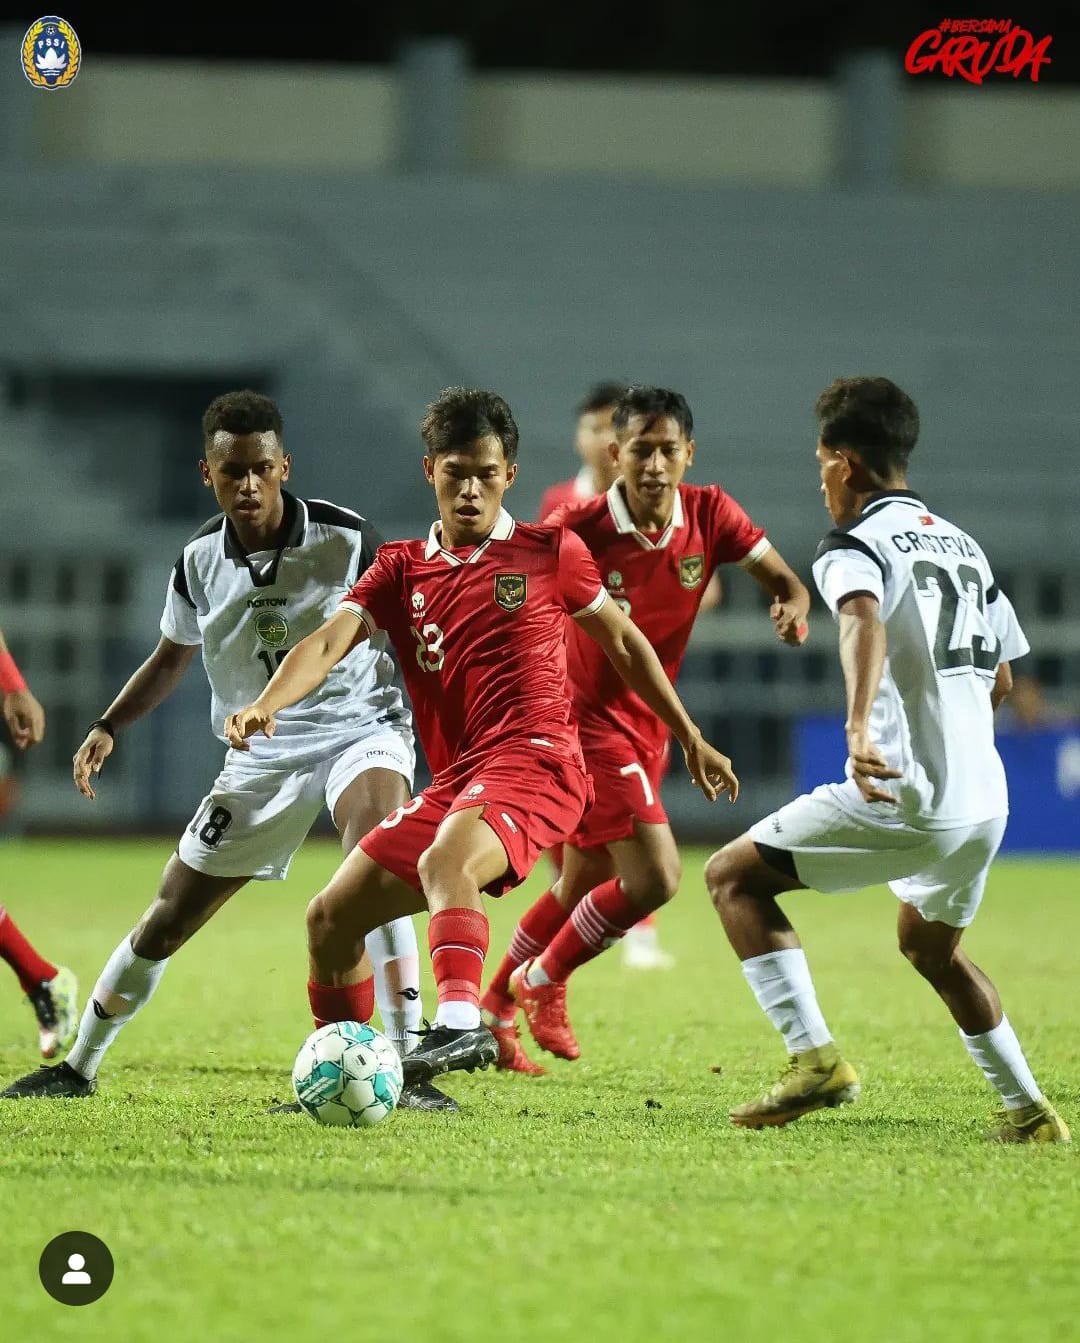 Jadwal Timnas Indonesia U-23 di Piala AFF U-23 : Perjuangan Berat Menghadapi Thailand